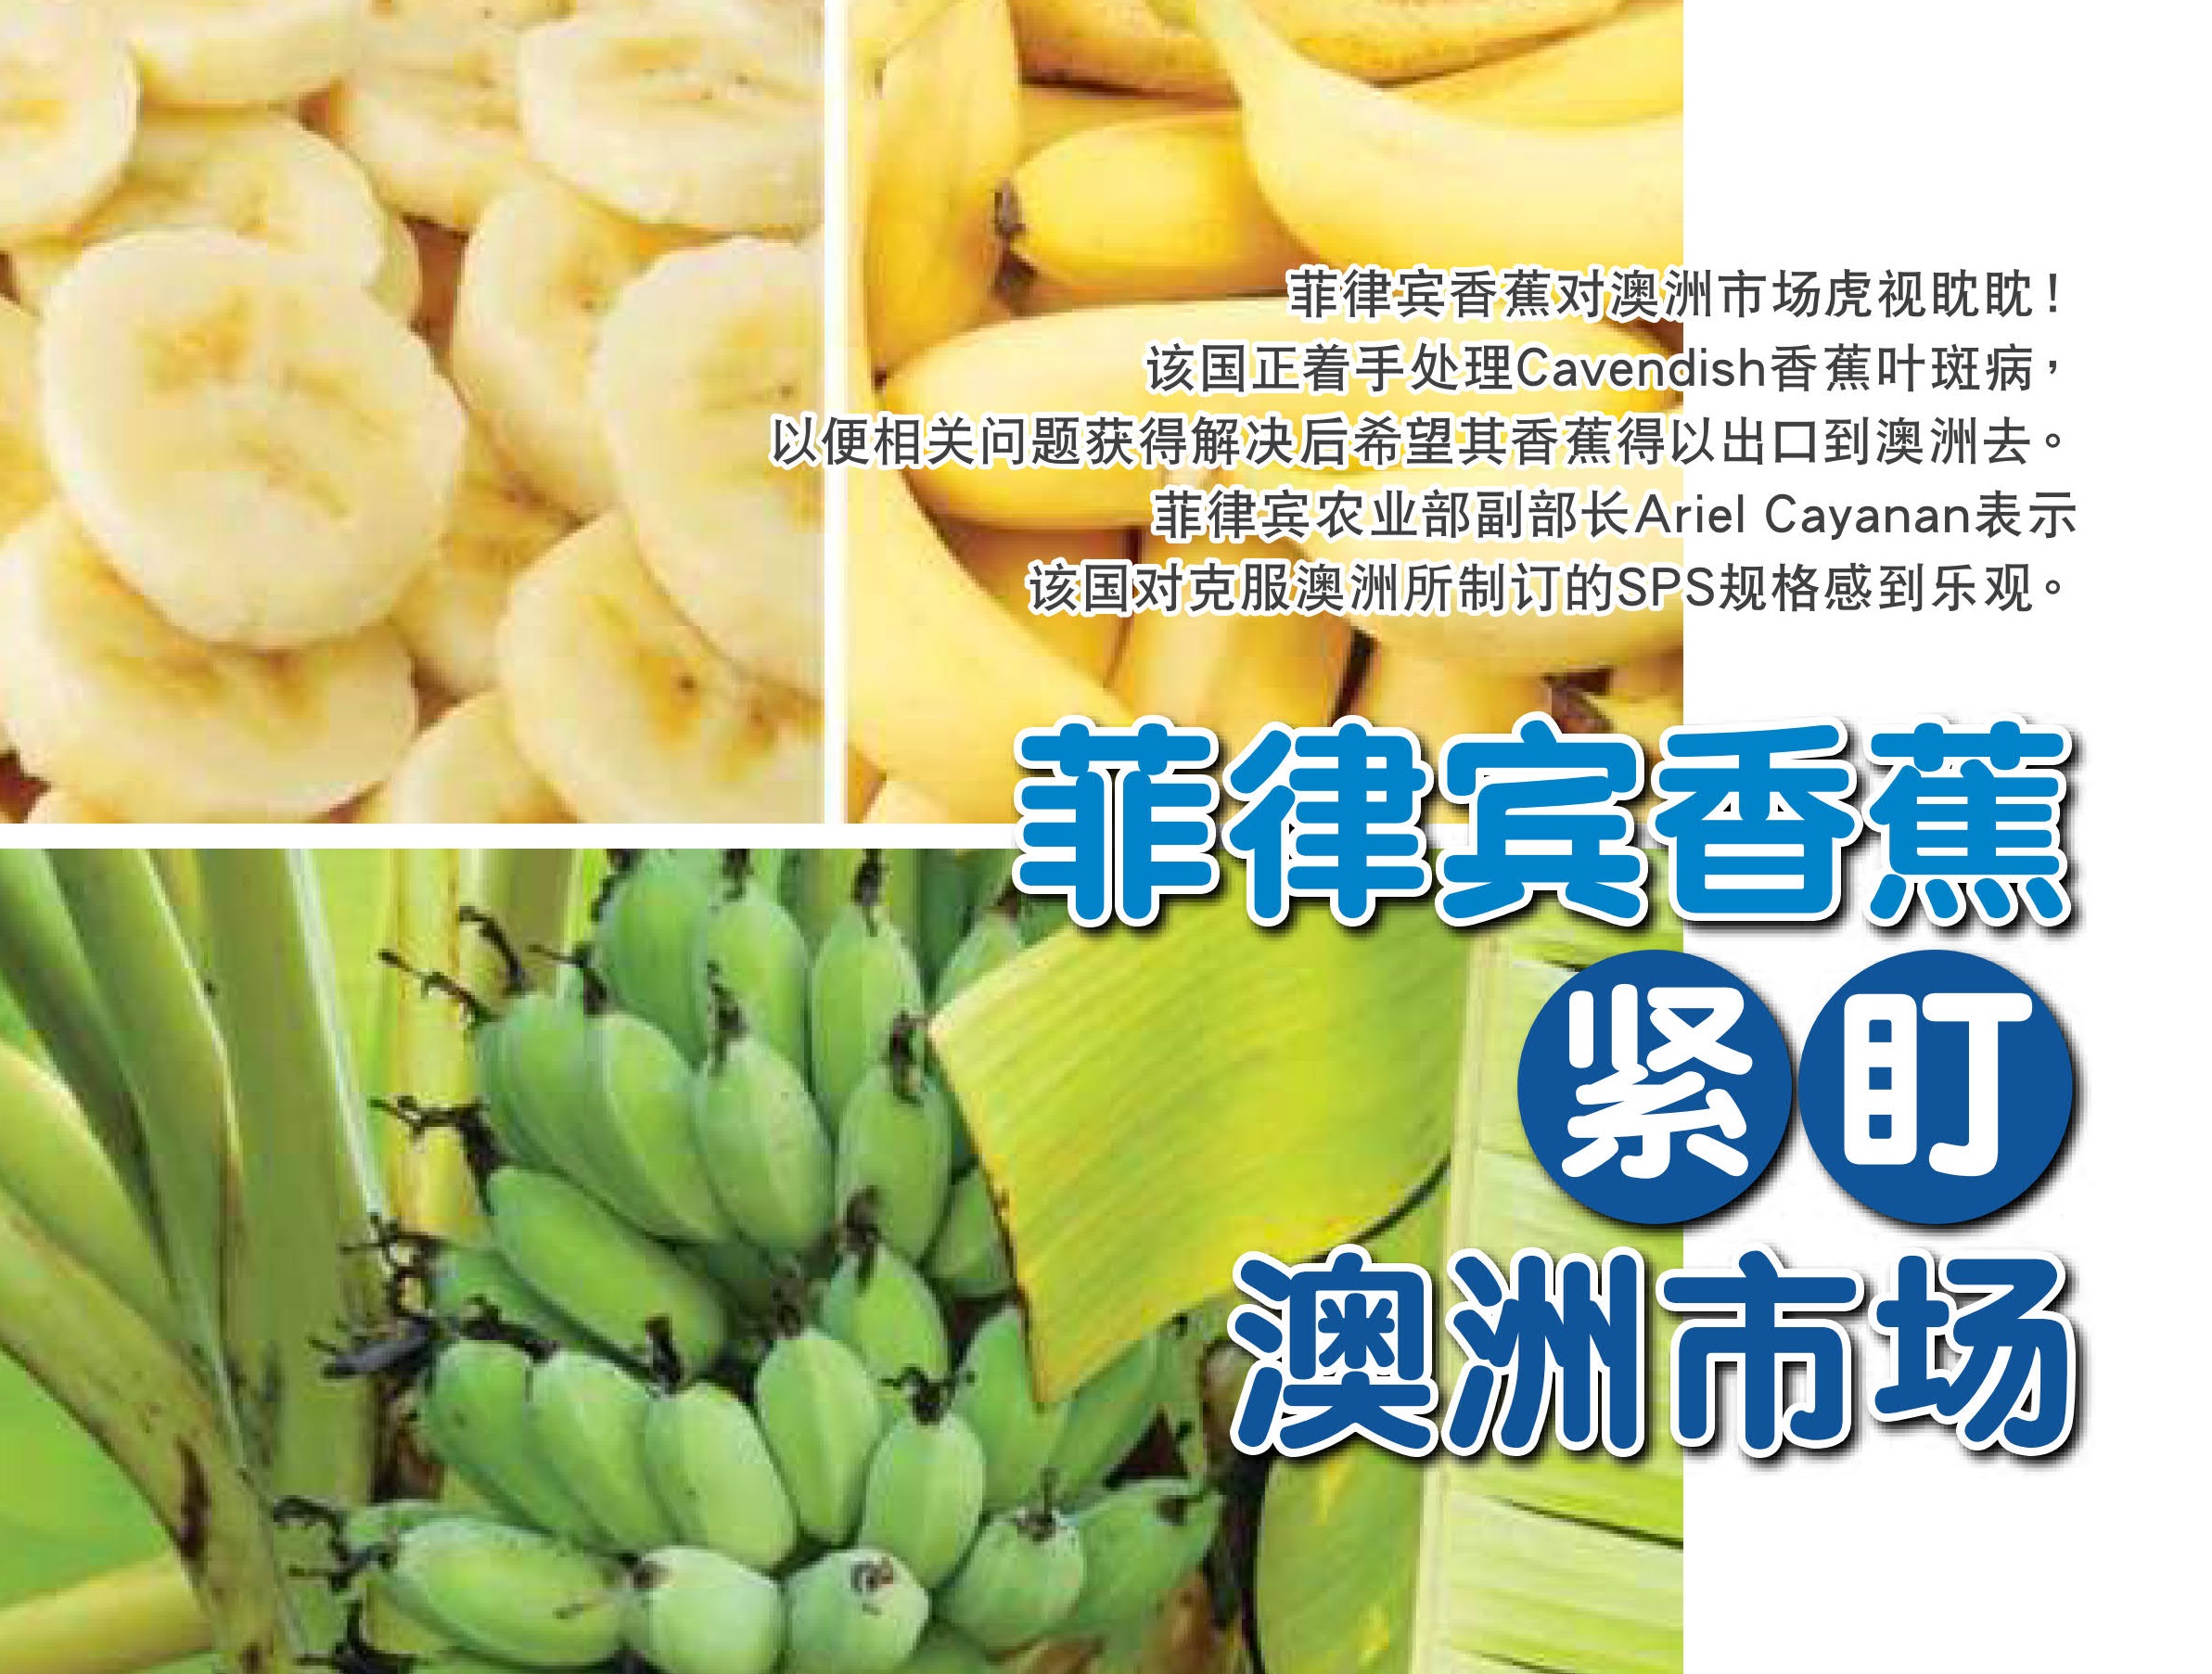 菲律宾香蕉  紧盯  澳洲市场 - 农牧世界